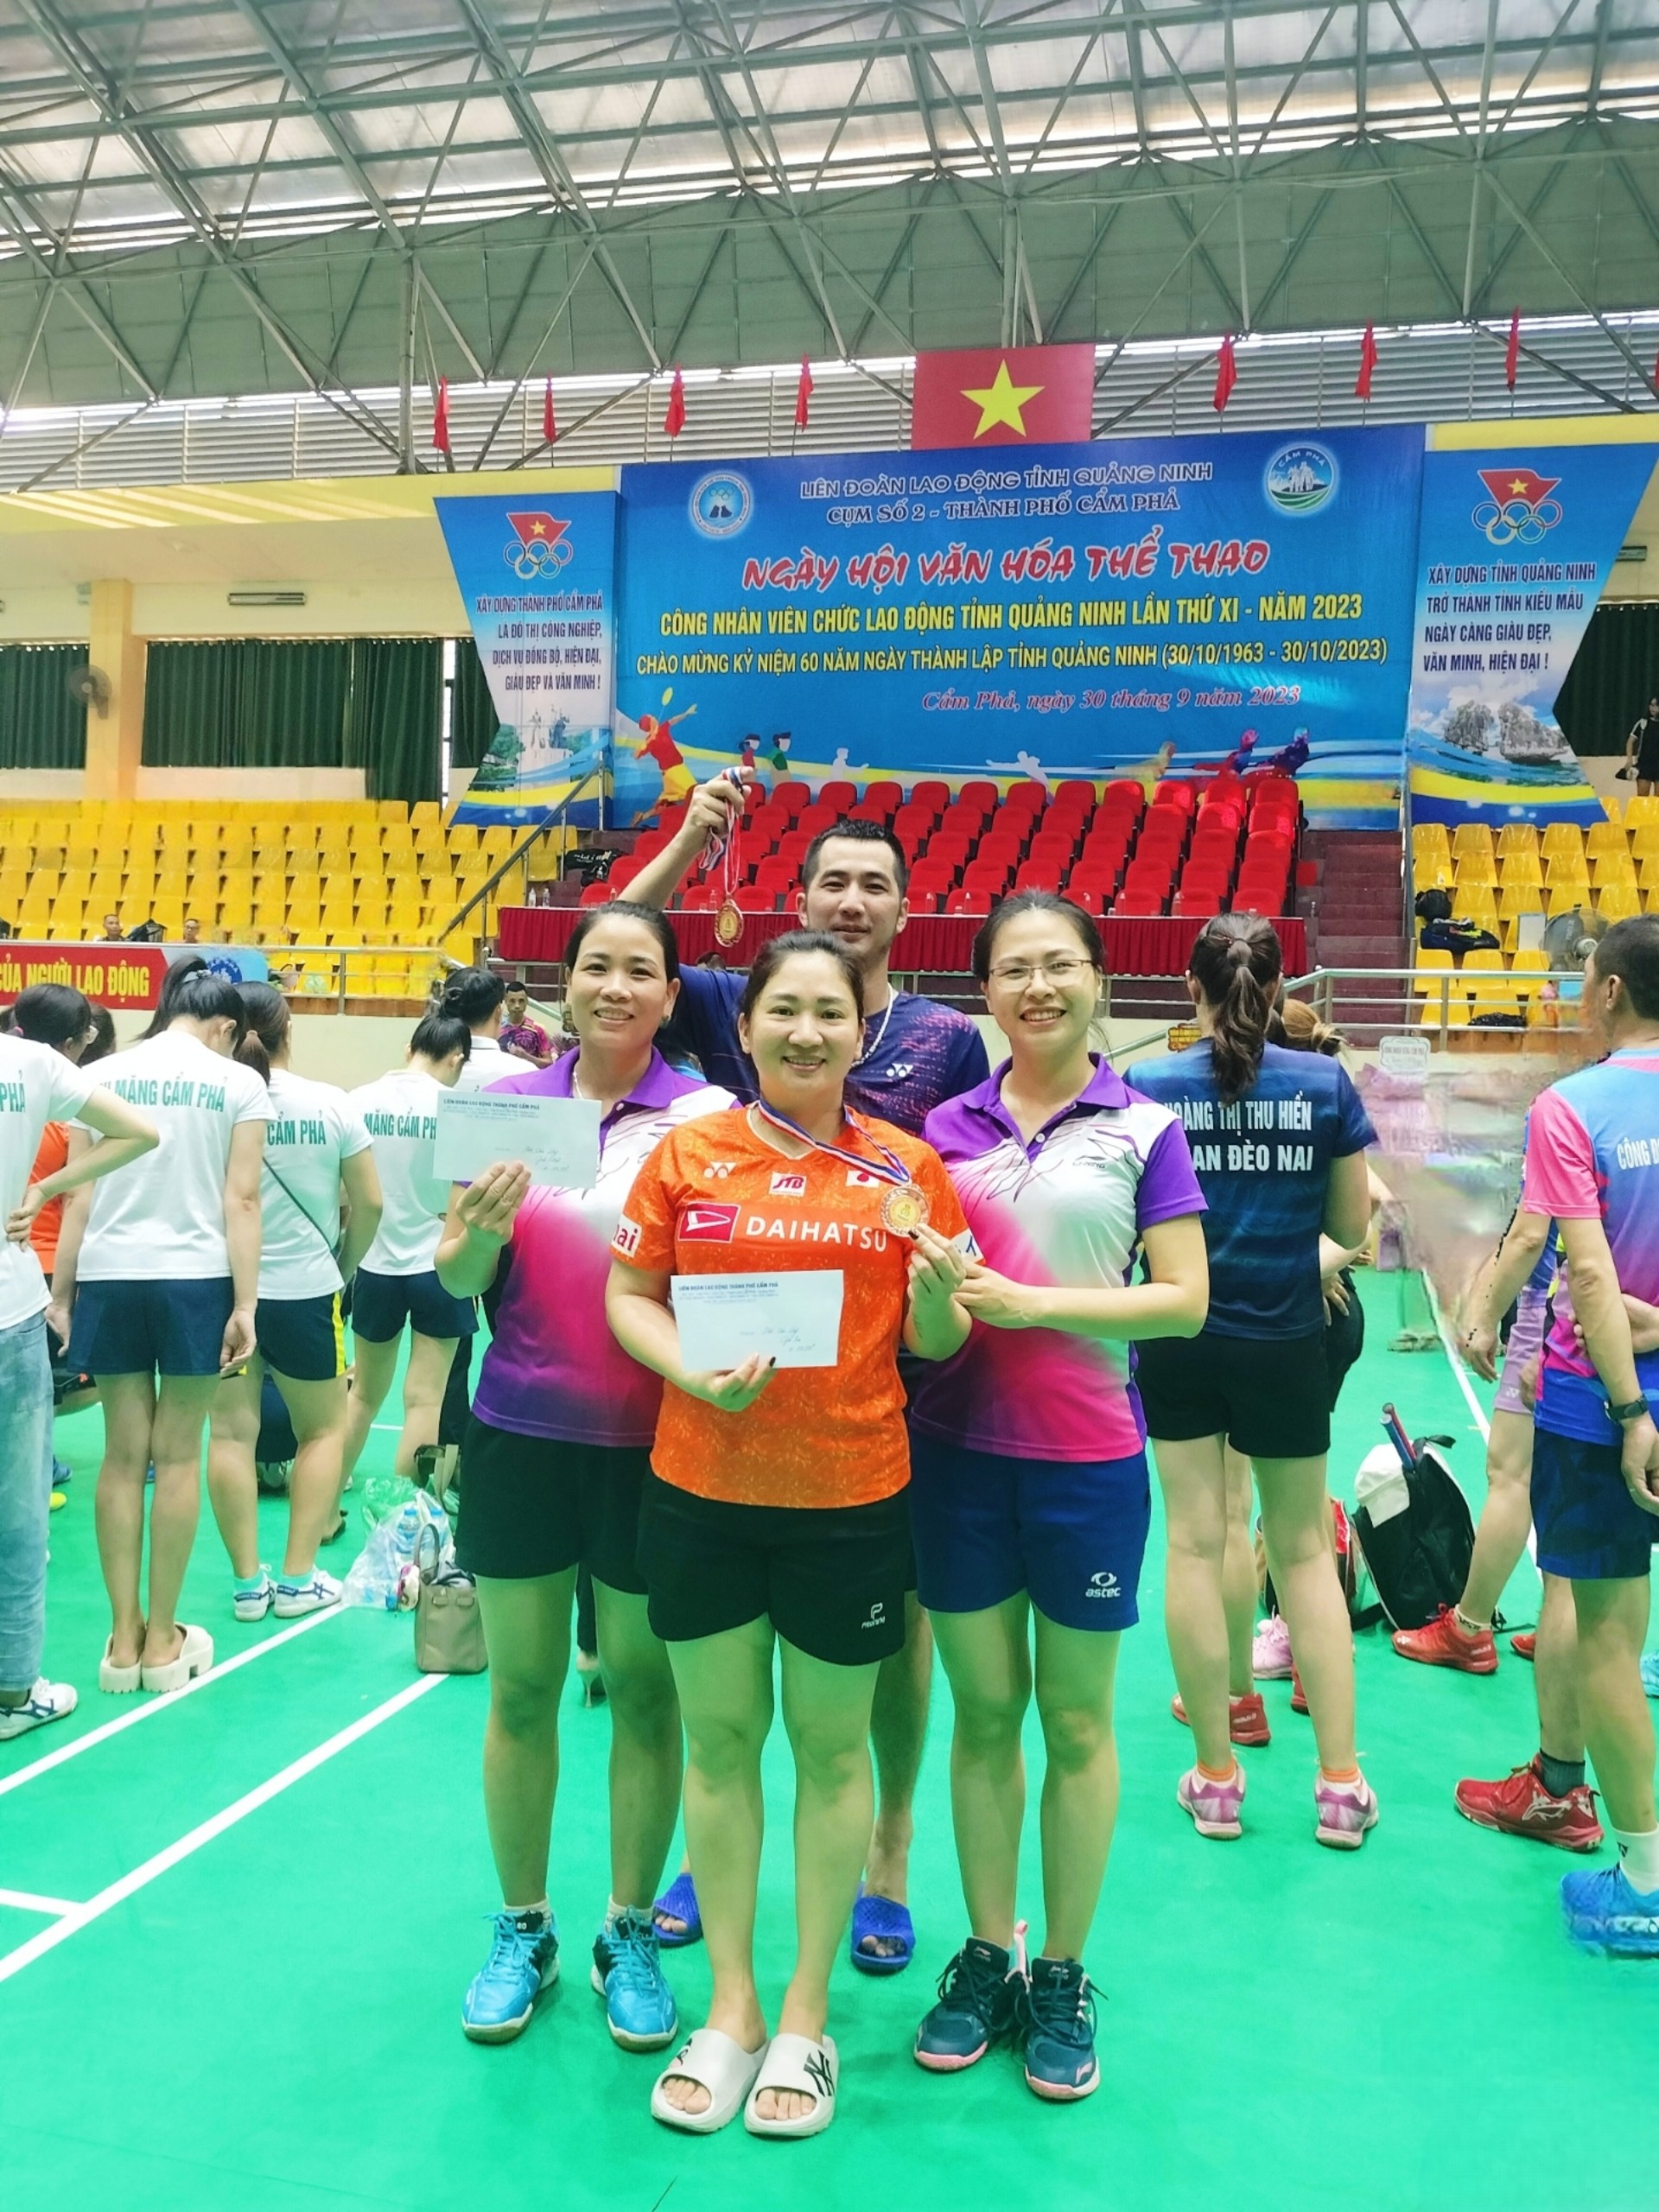 Đoàn Bệnh viện đa khoa khu vực Cẩm Phả đạt giải cao tại Ngày hội Văn hoá thể thao Công nhân viên chức lao động tỉnh Quảng Ninh lần thứ XI năm 2023, cụm TP Cẩm Phả.